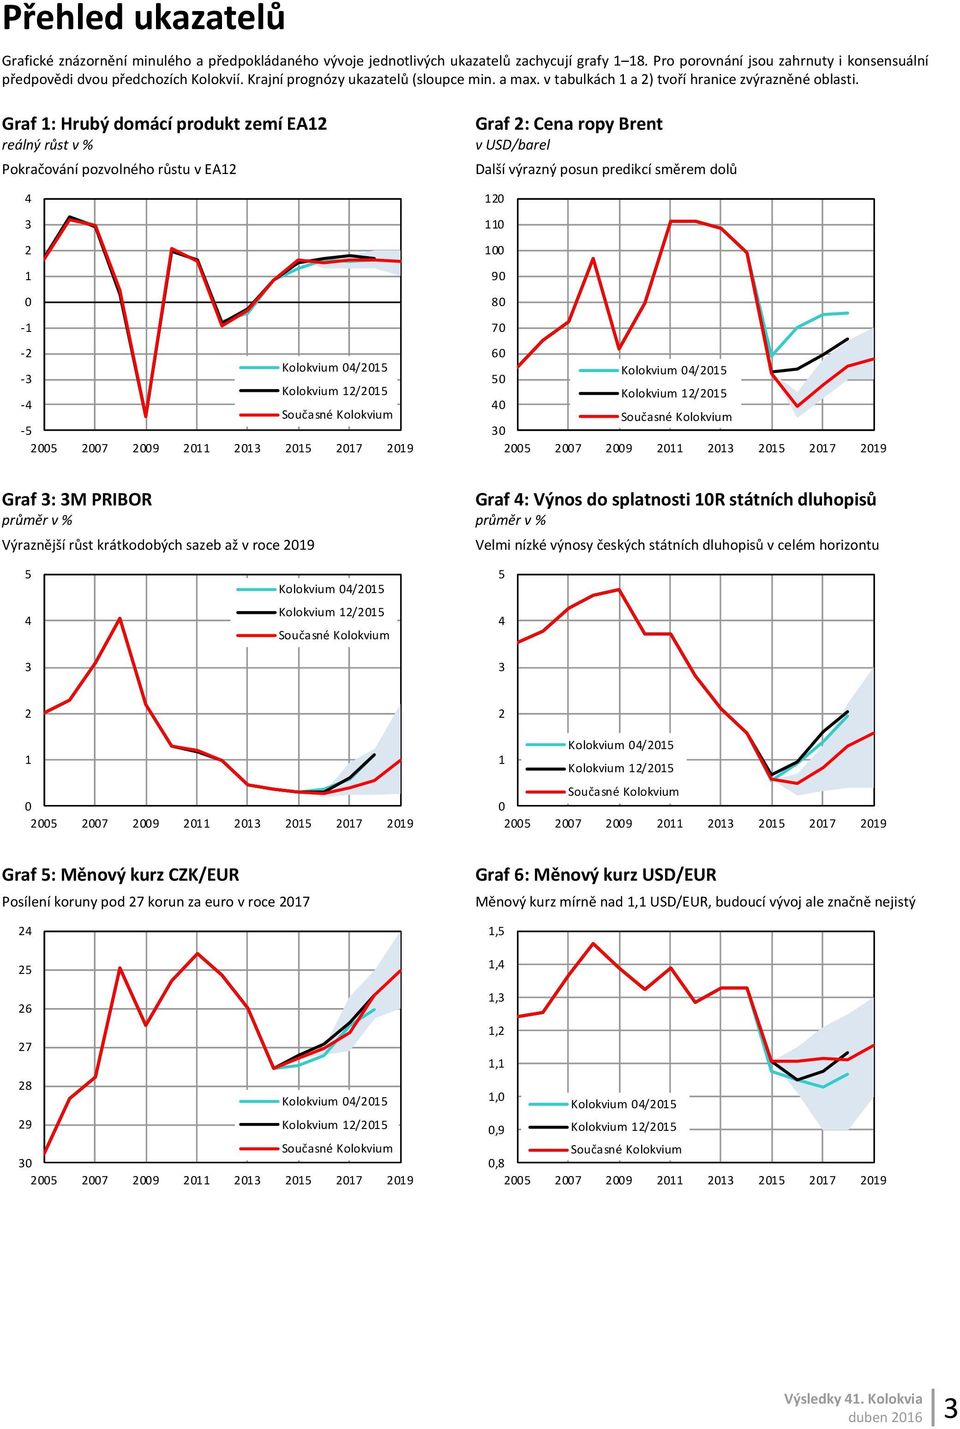 Graf : Hrubý domácí produkt zemí EA reálný růst v % Pokračování pozvolného růstu v EA - - - - - Graf : Cena ropy Brent v USD/barel Další výrazný posun predikcí směrem dolů 9 8 7 Graf : M PRIBOR Graf